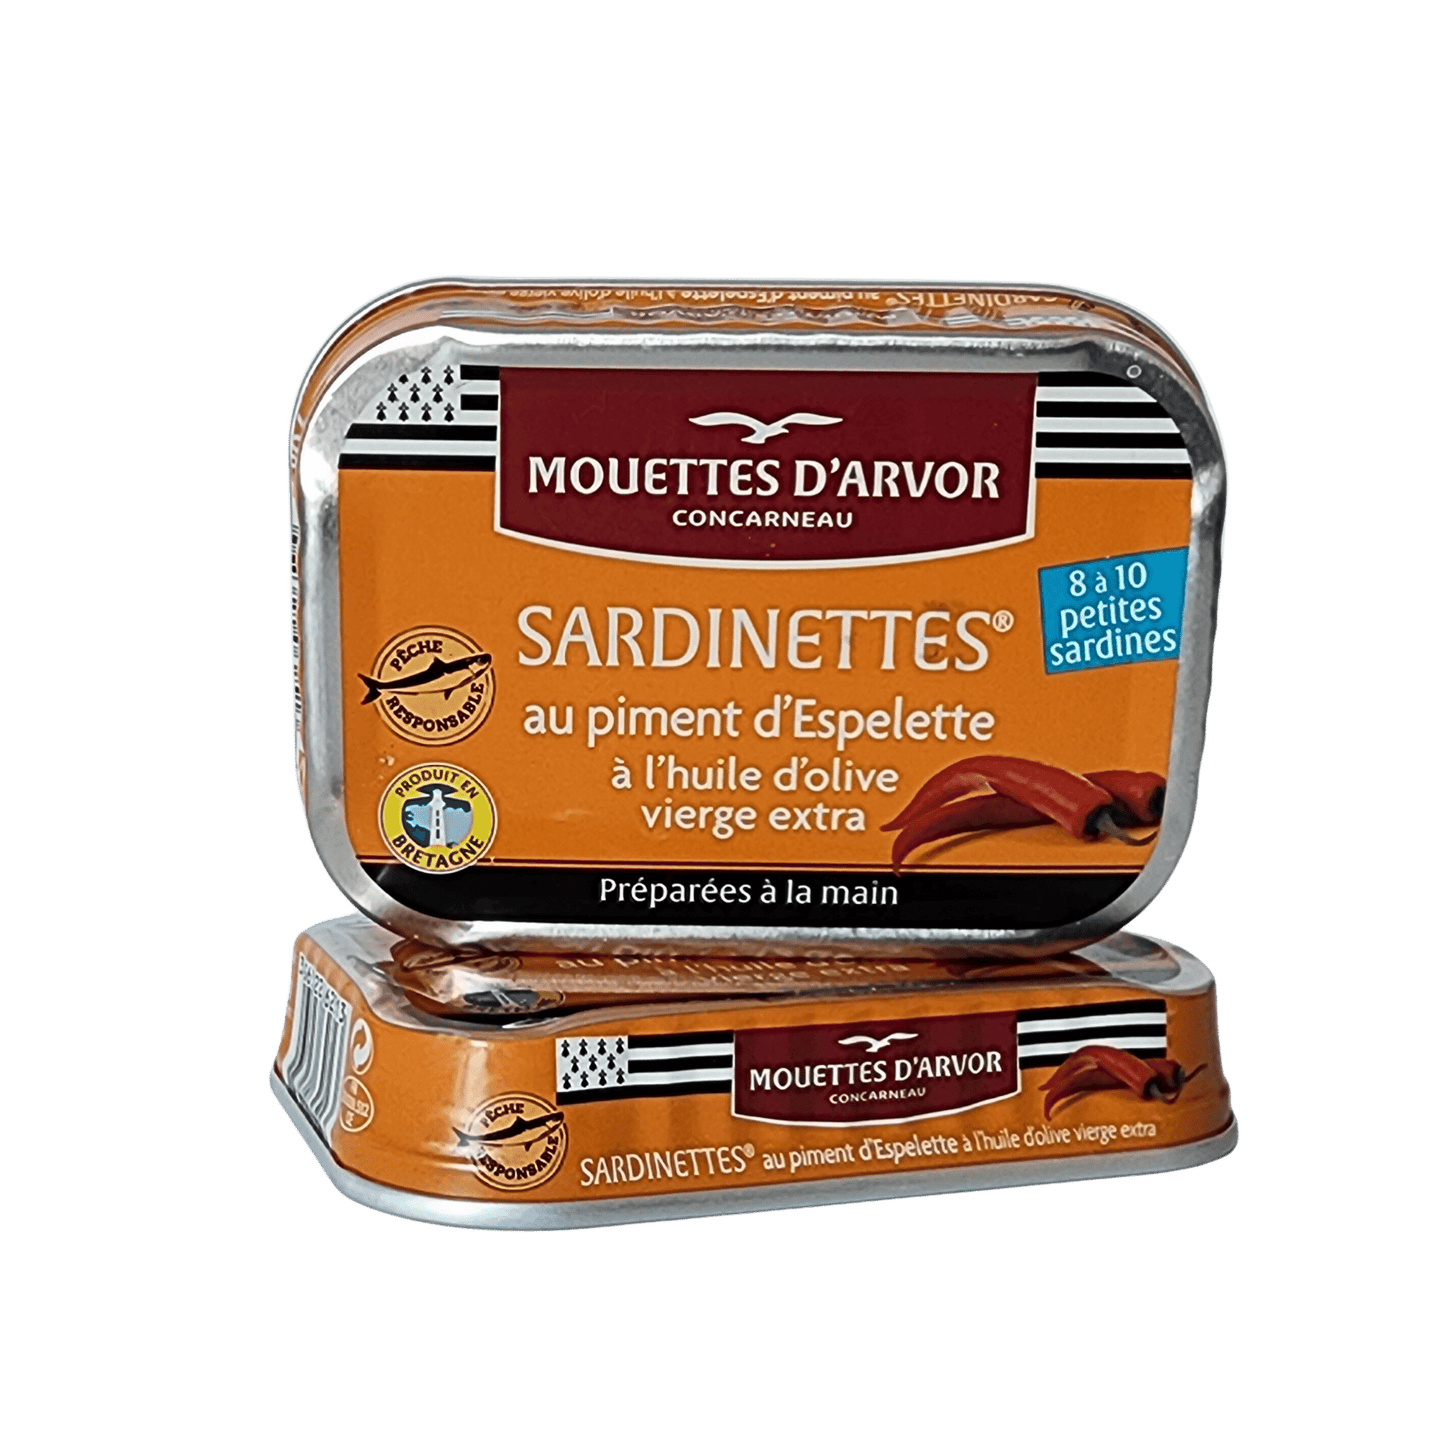 Sardinettes | Olivenöl mit Piment d’Espelette | Les Mouettes d’Arvor | Concarneau | Frankreich